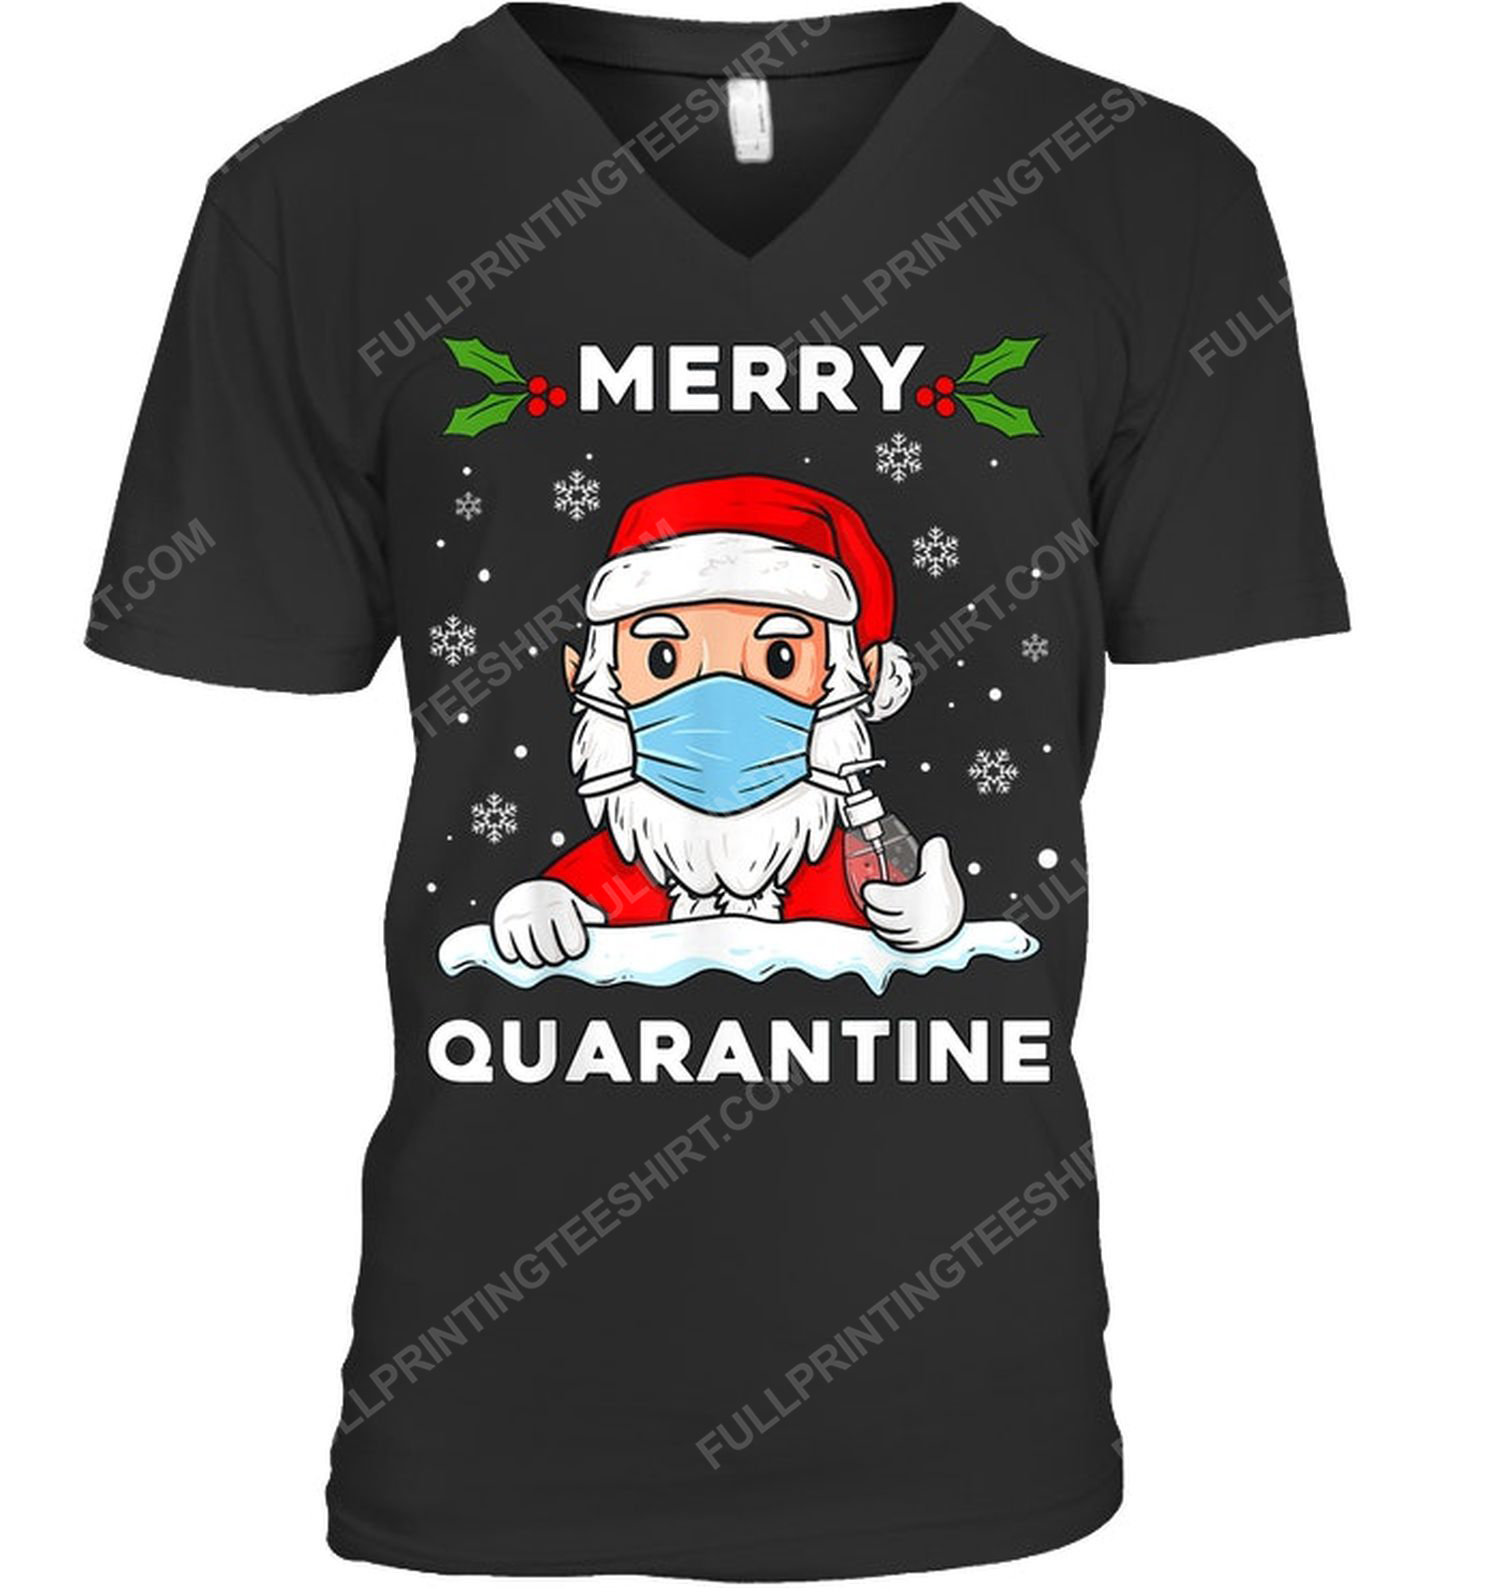 Merry quarantine christmas santa claus v-neck